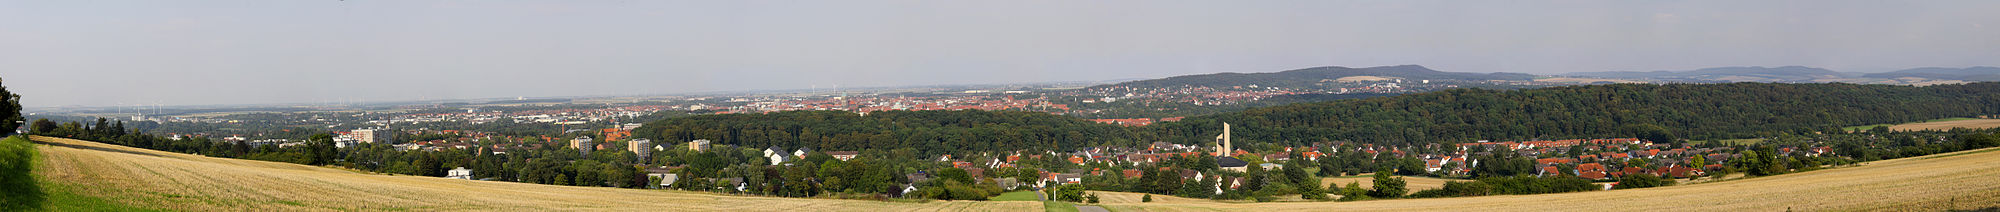 Blick auf Hildesheim vom Panoramaweg